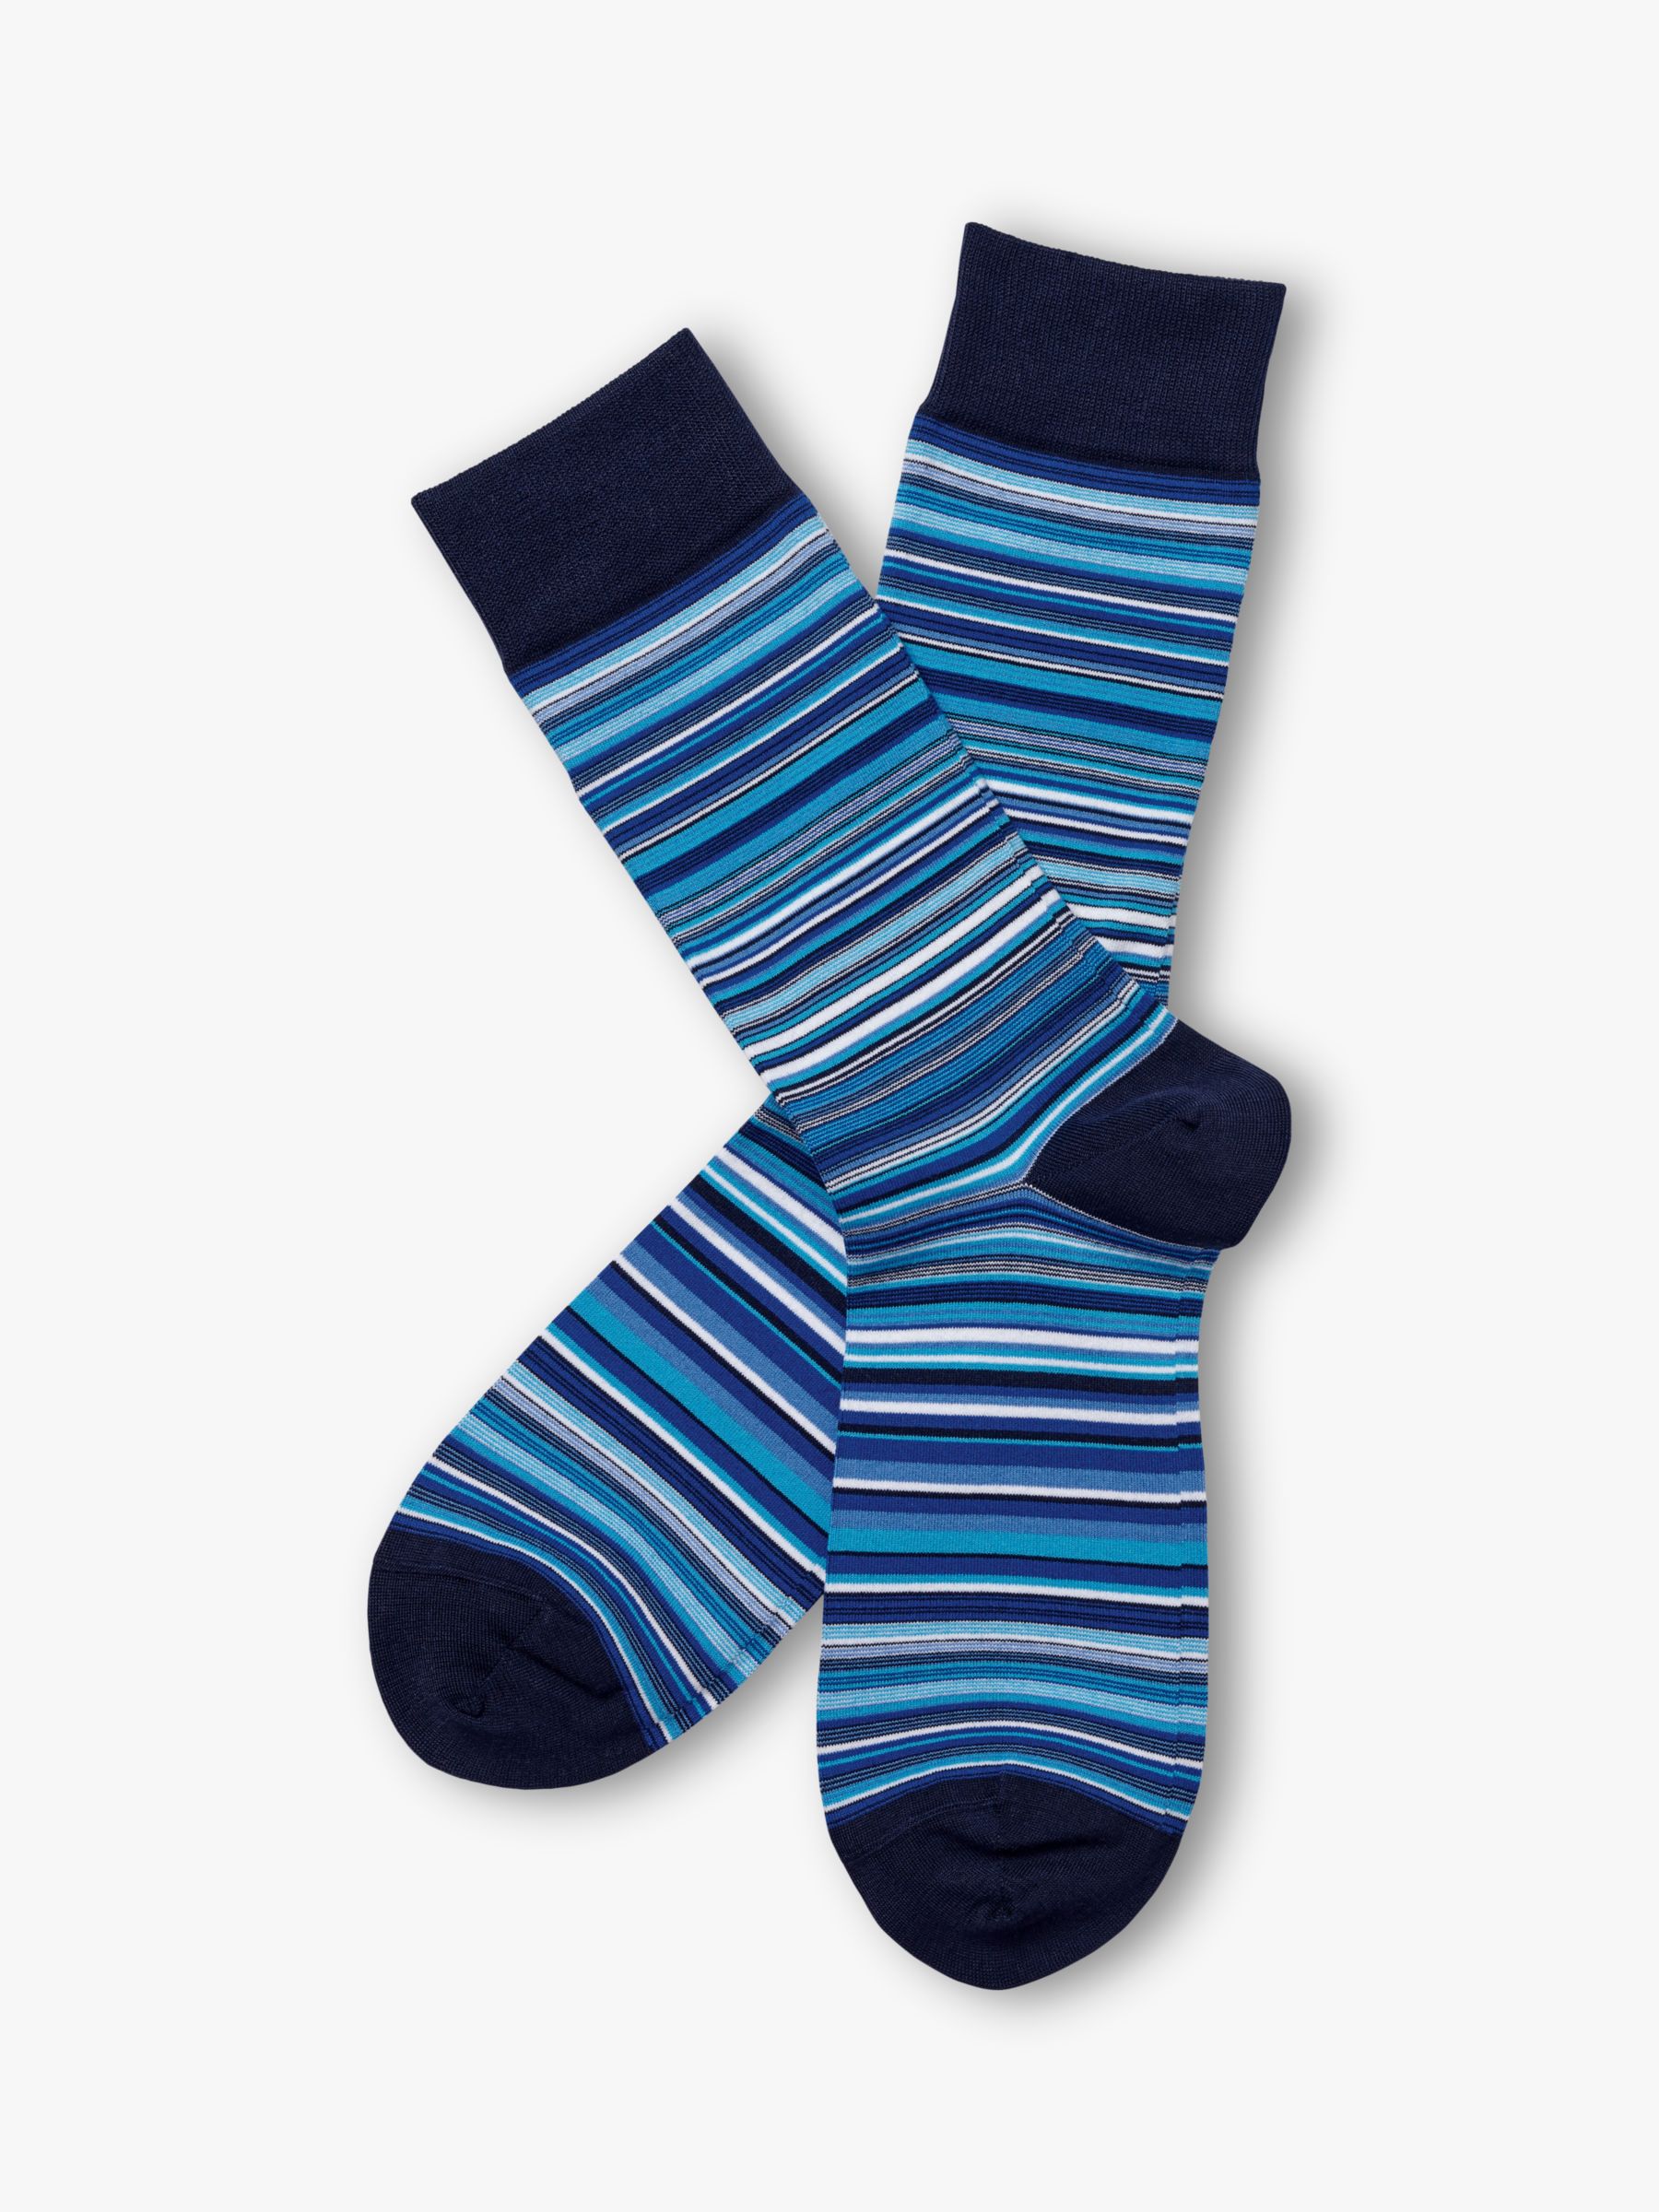 Charles Tyrwhitt Stripe Ankle Socks at John Lewis & Partners